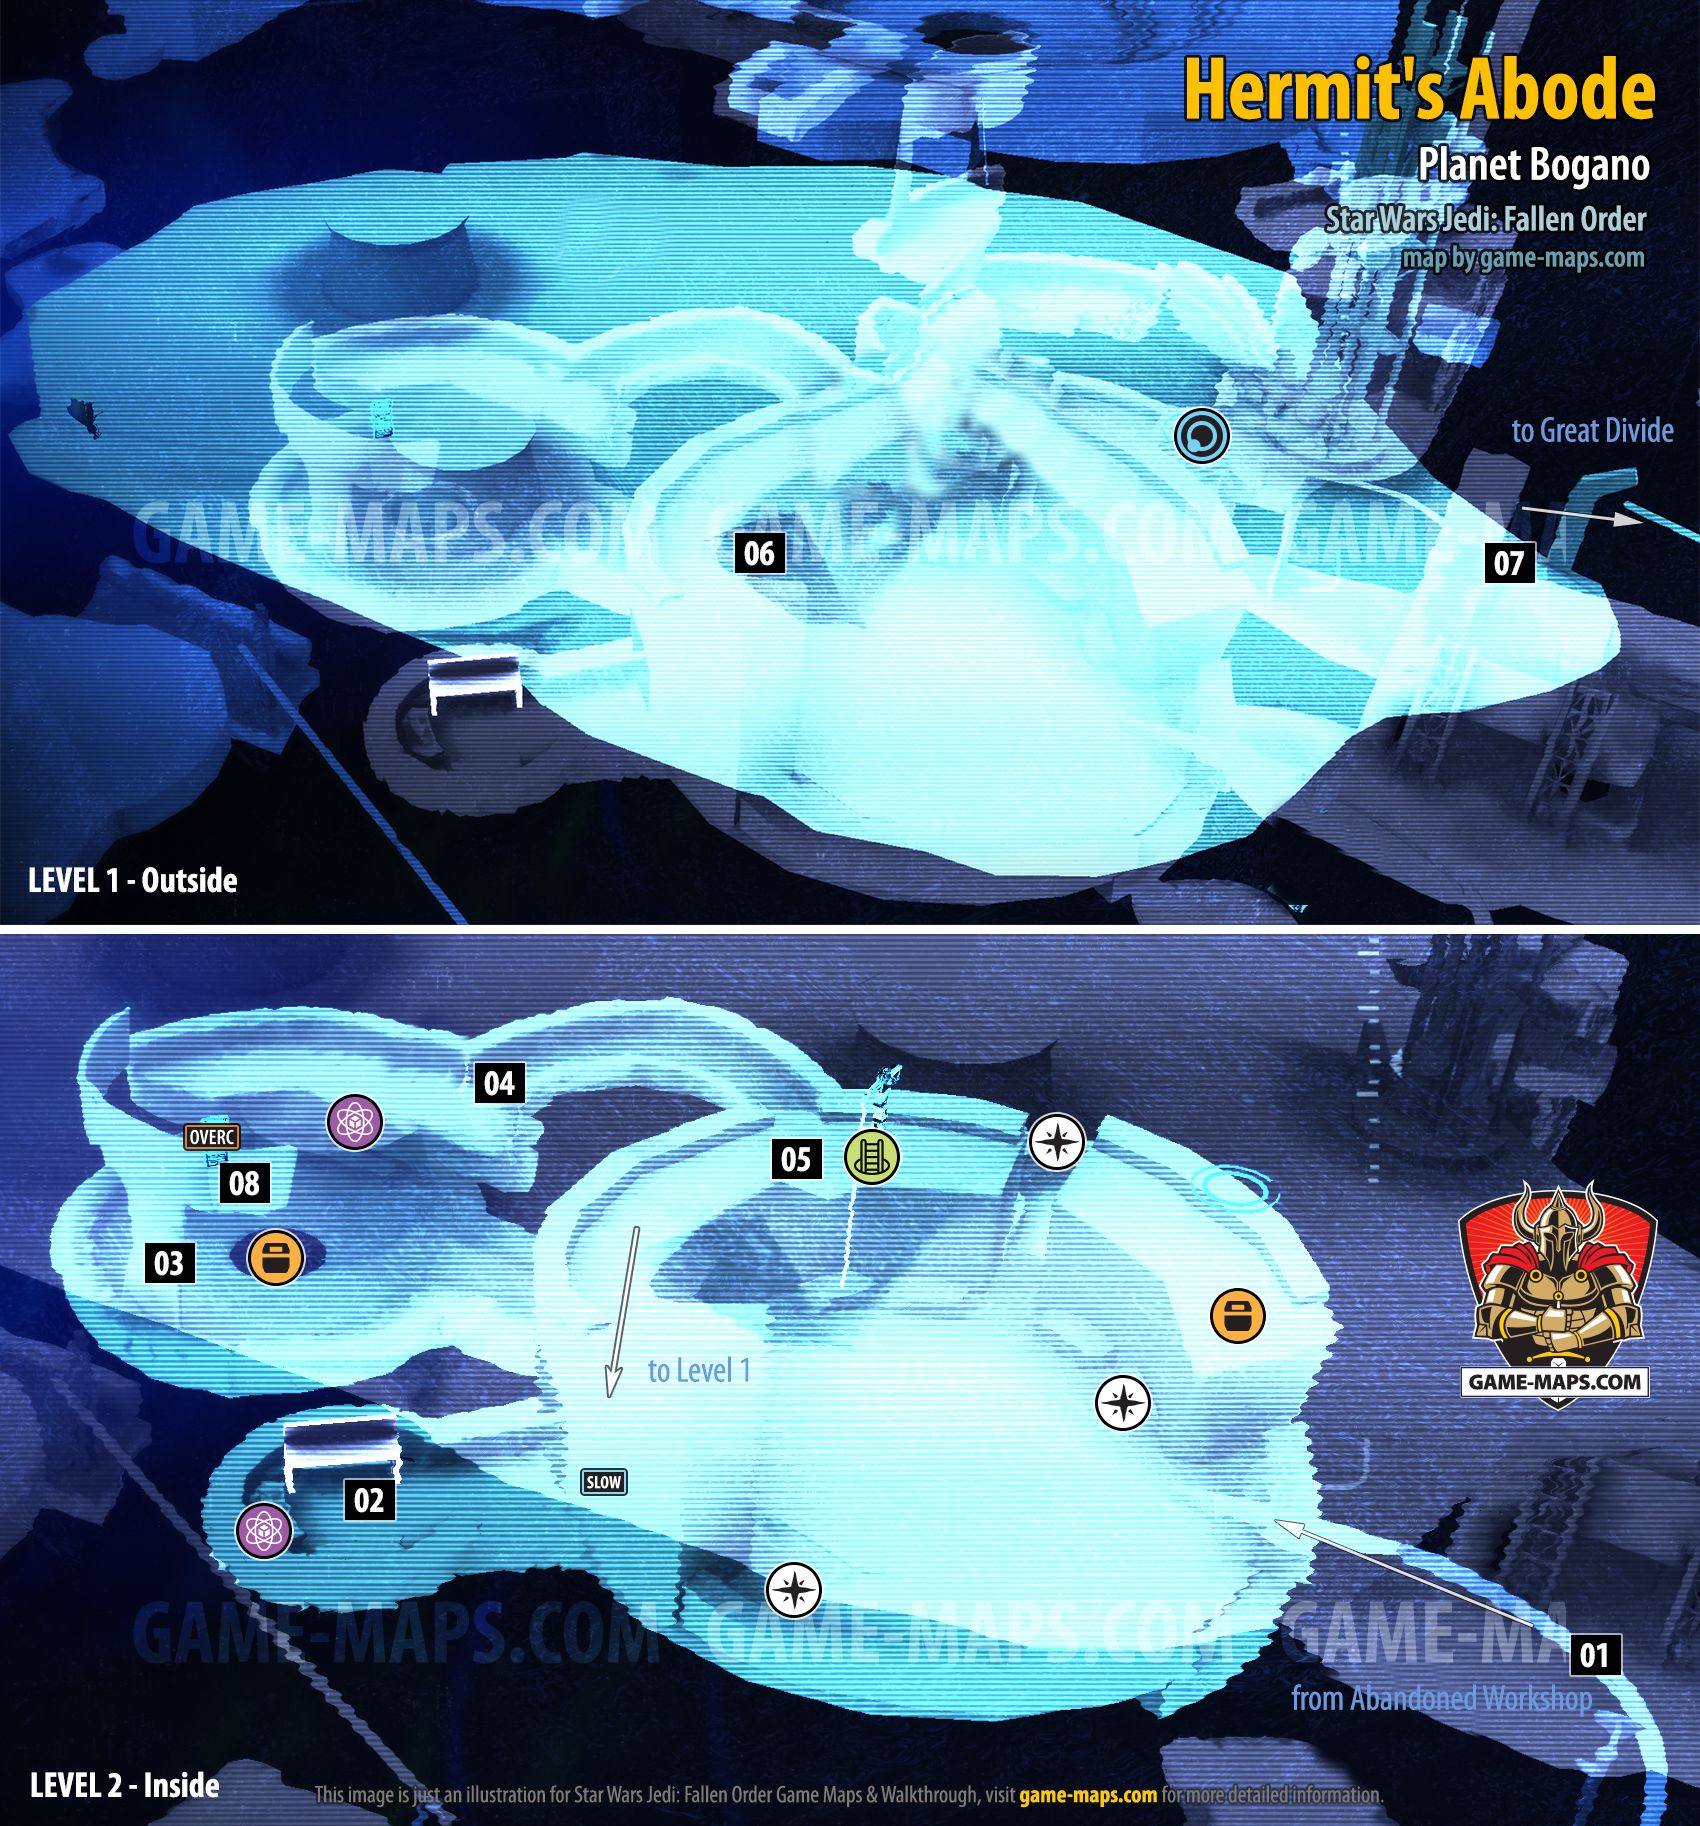 Hermit's Abode Map, Planet Bogano for Star Wars Jedi Fallen Order